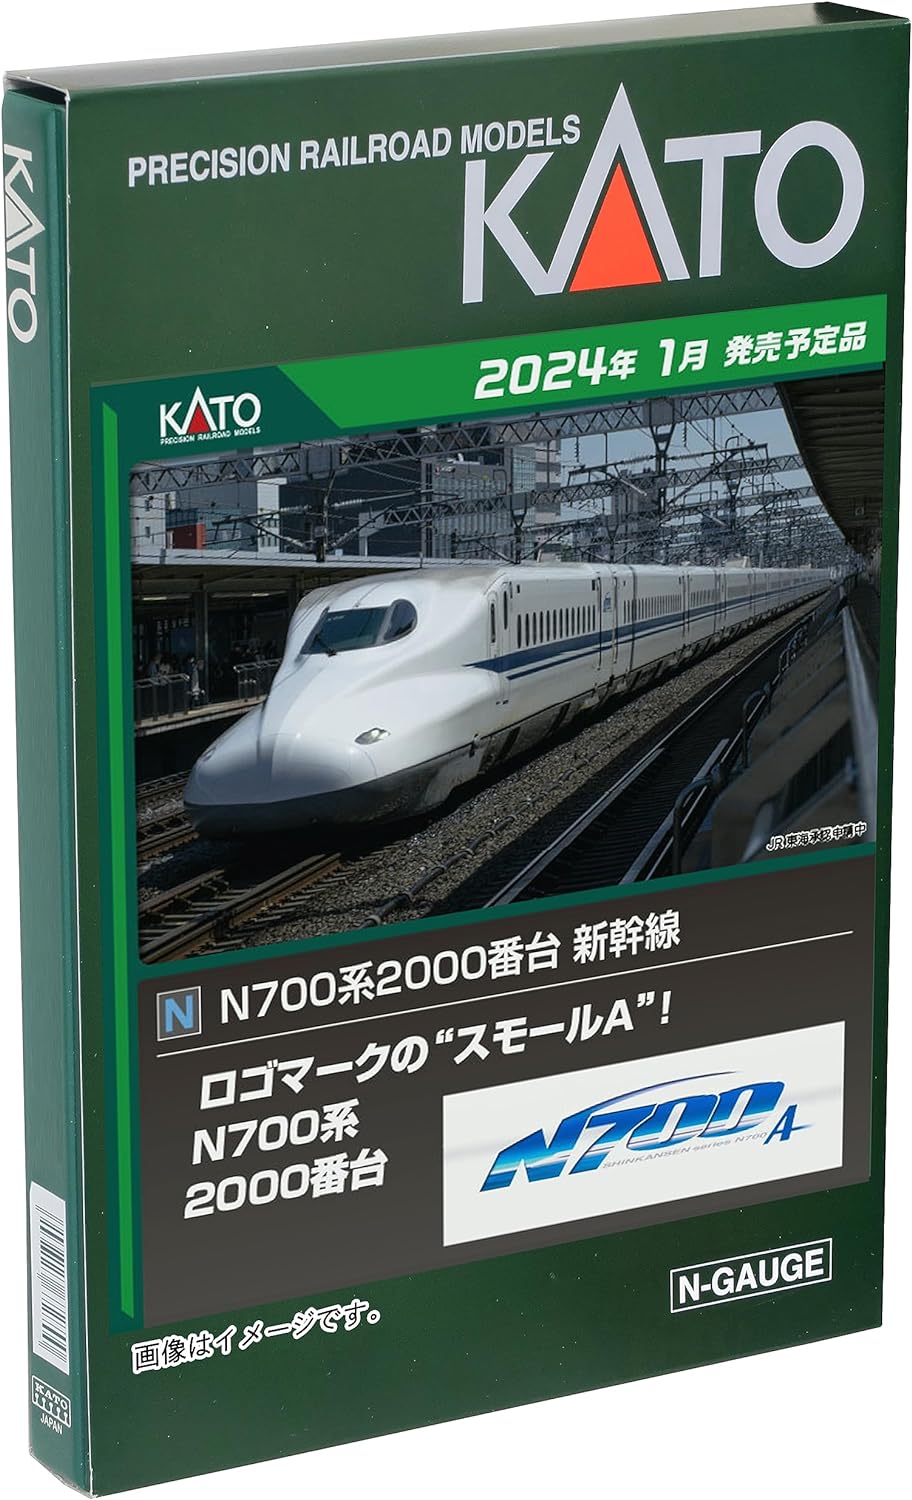 KATO N Gauge N700 Series 2000 Series 8-Car Extension Set 10-1818 Railway Model Train - BanzaiHobby